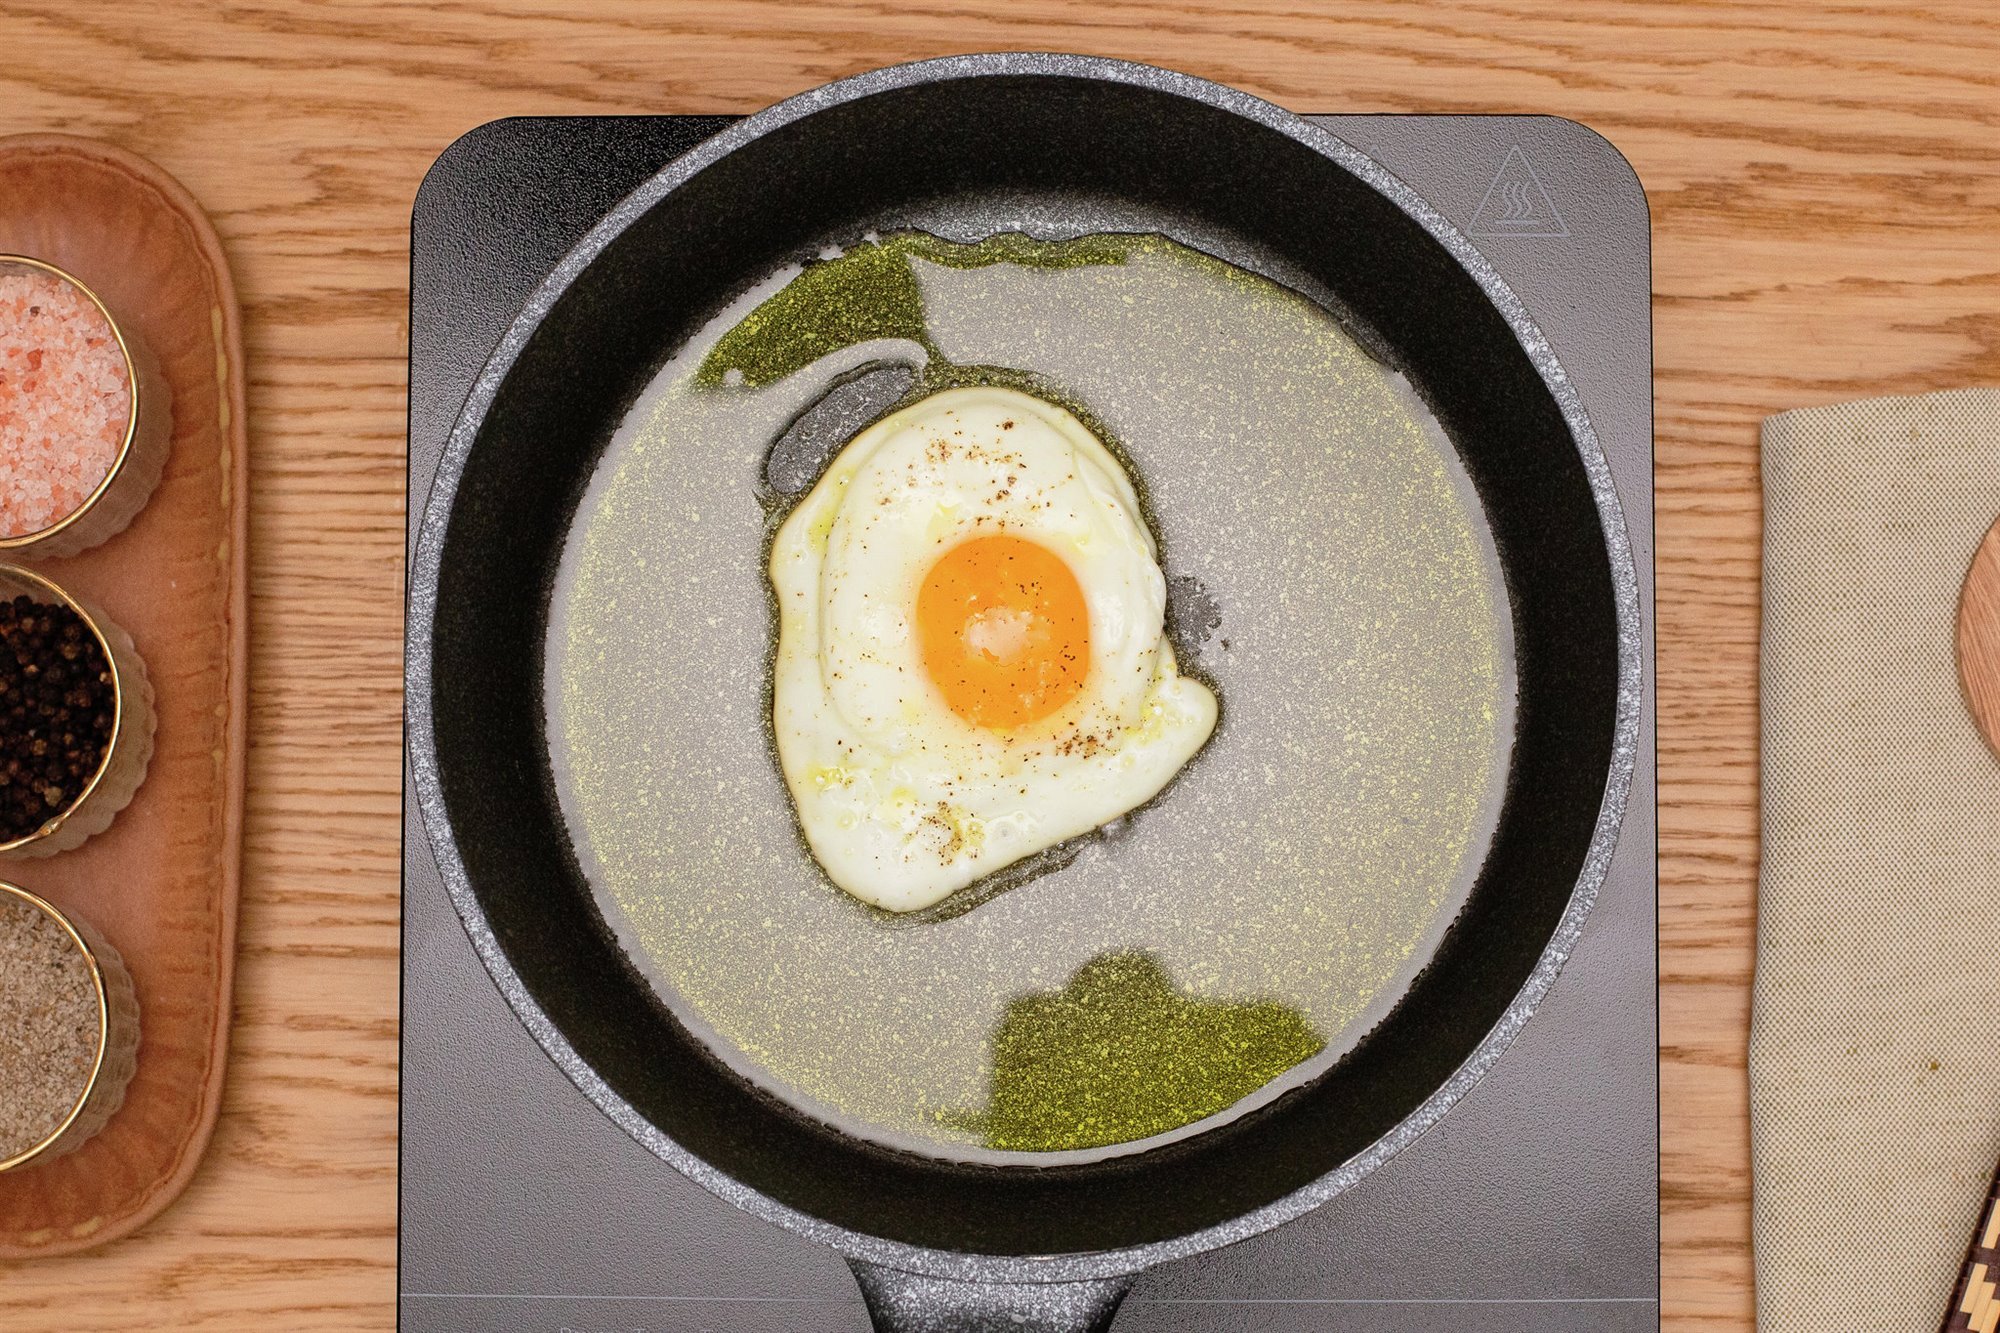 4. Fríe los huevos